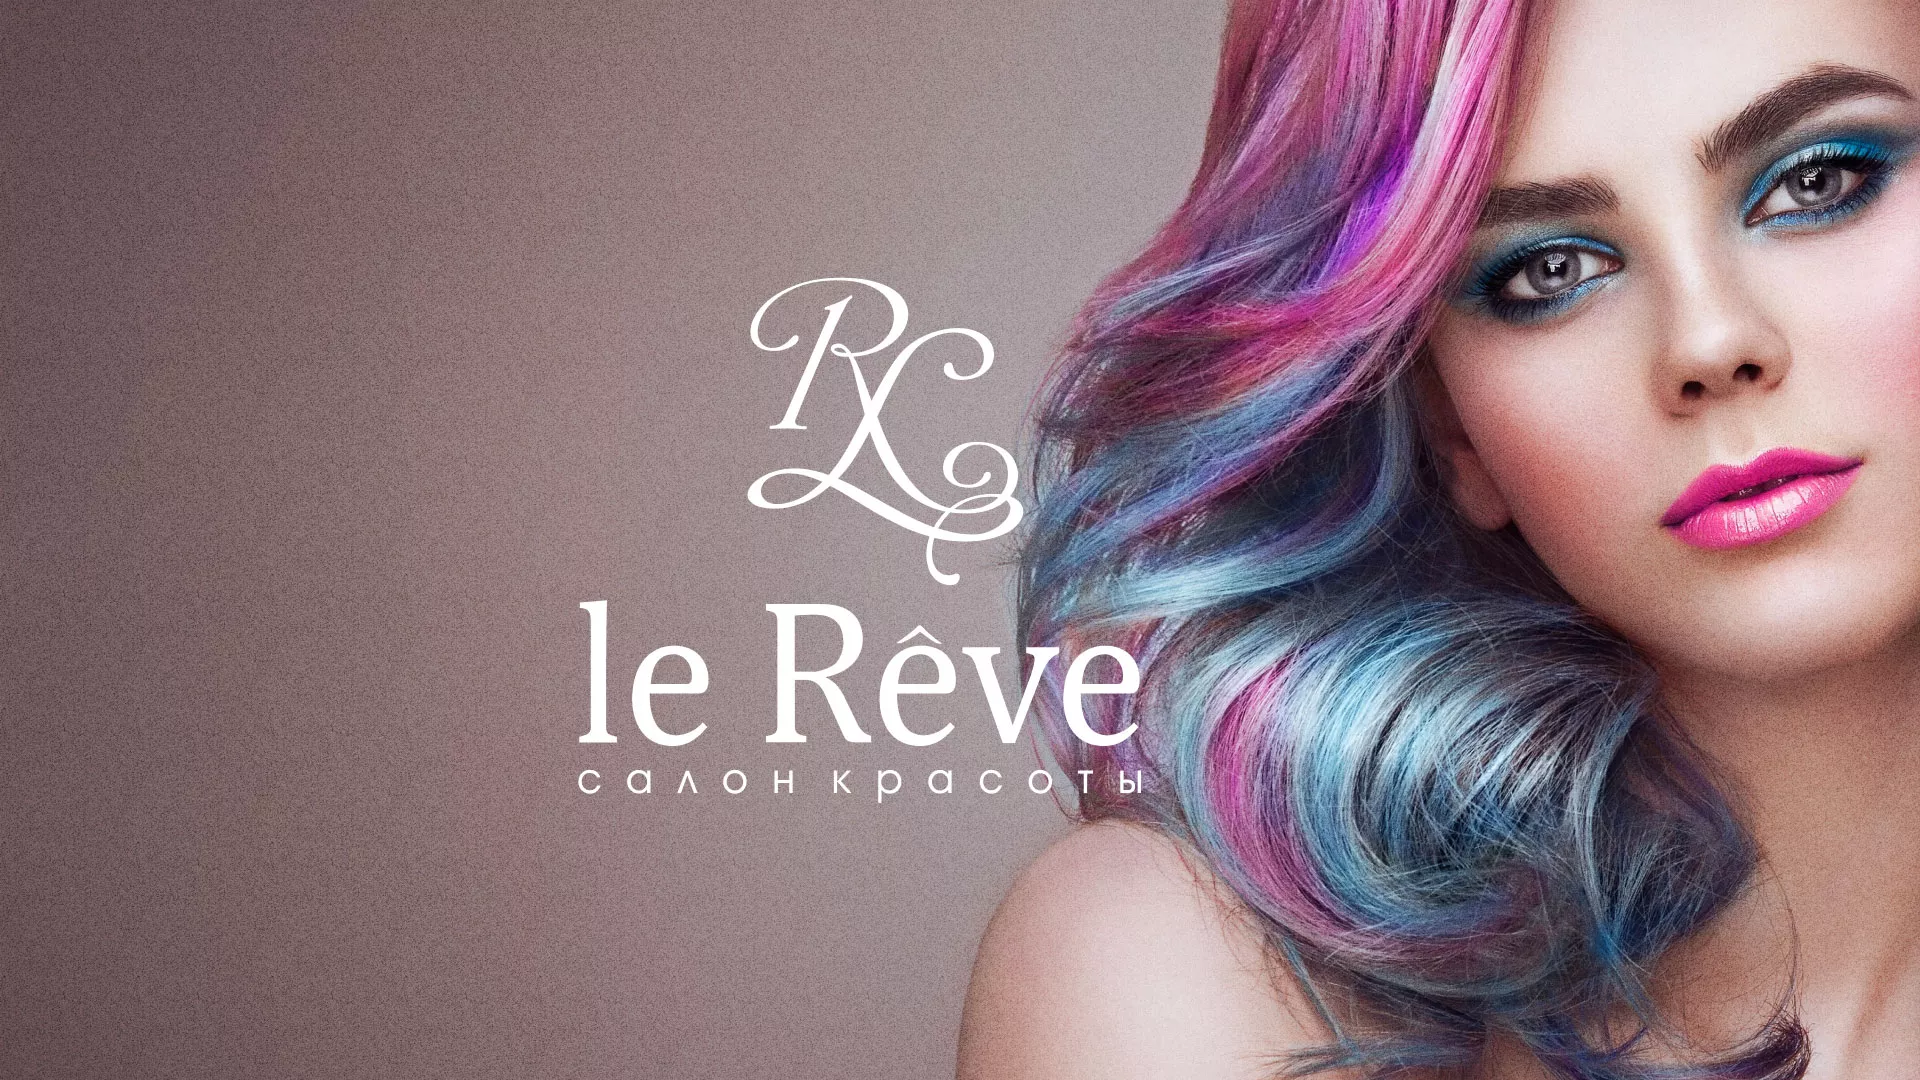 Создание сайта для салона красоты «Le Reve» в Чусовом